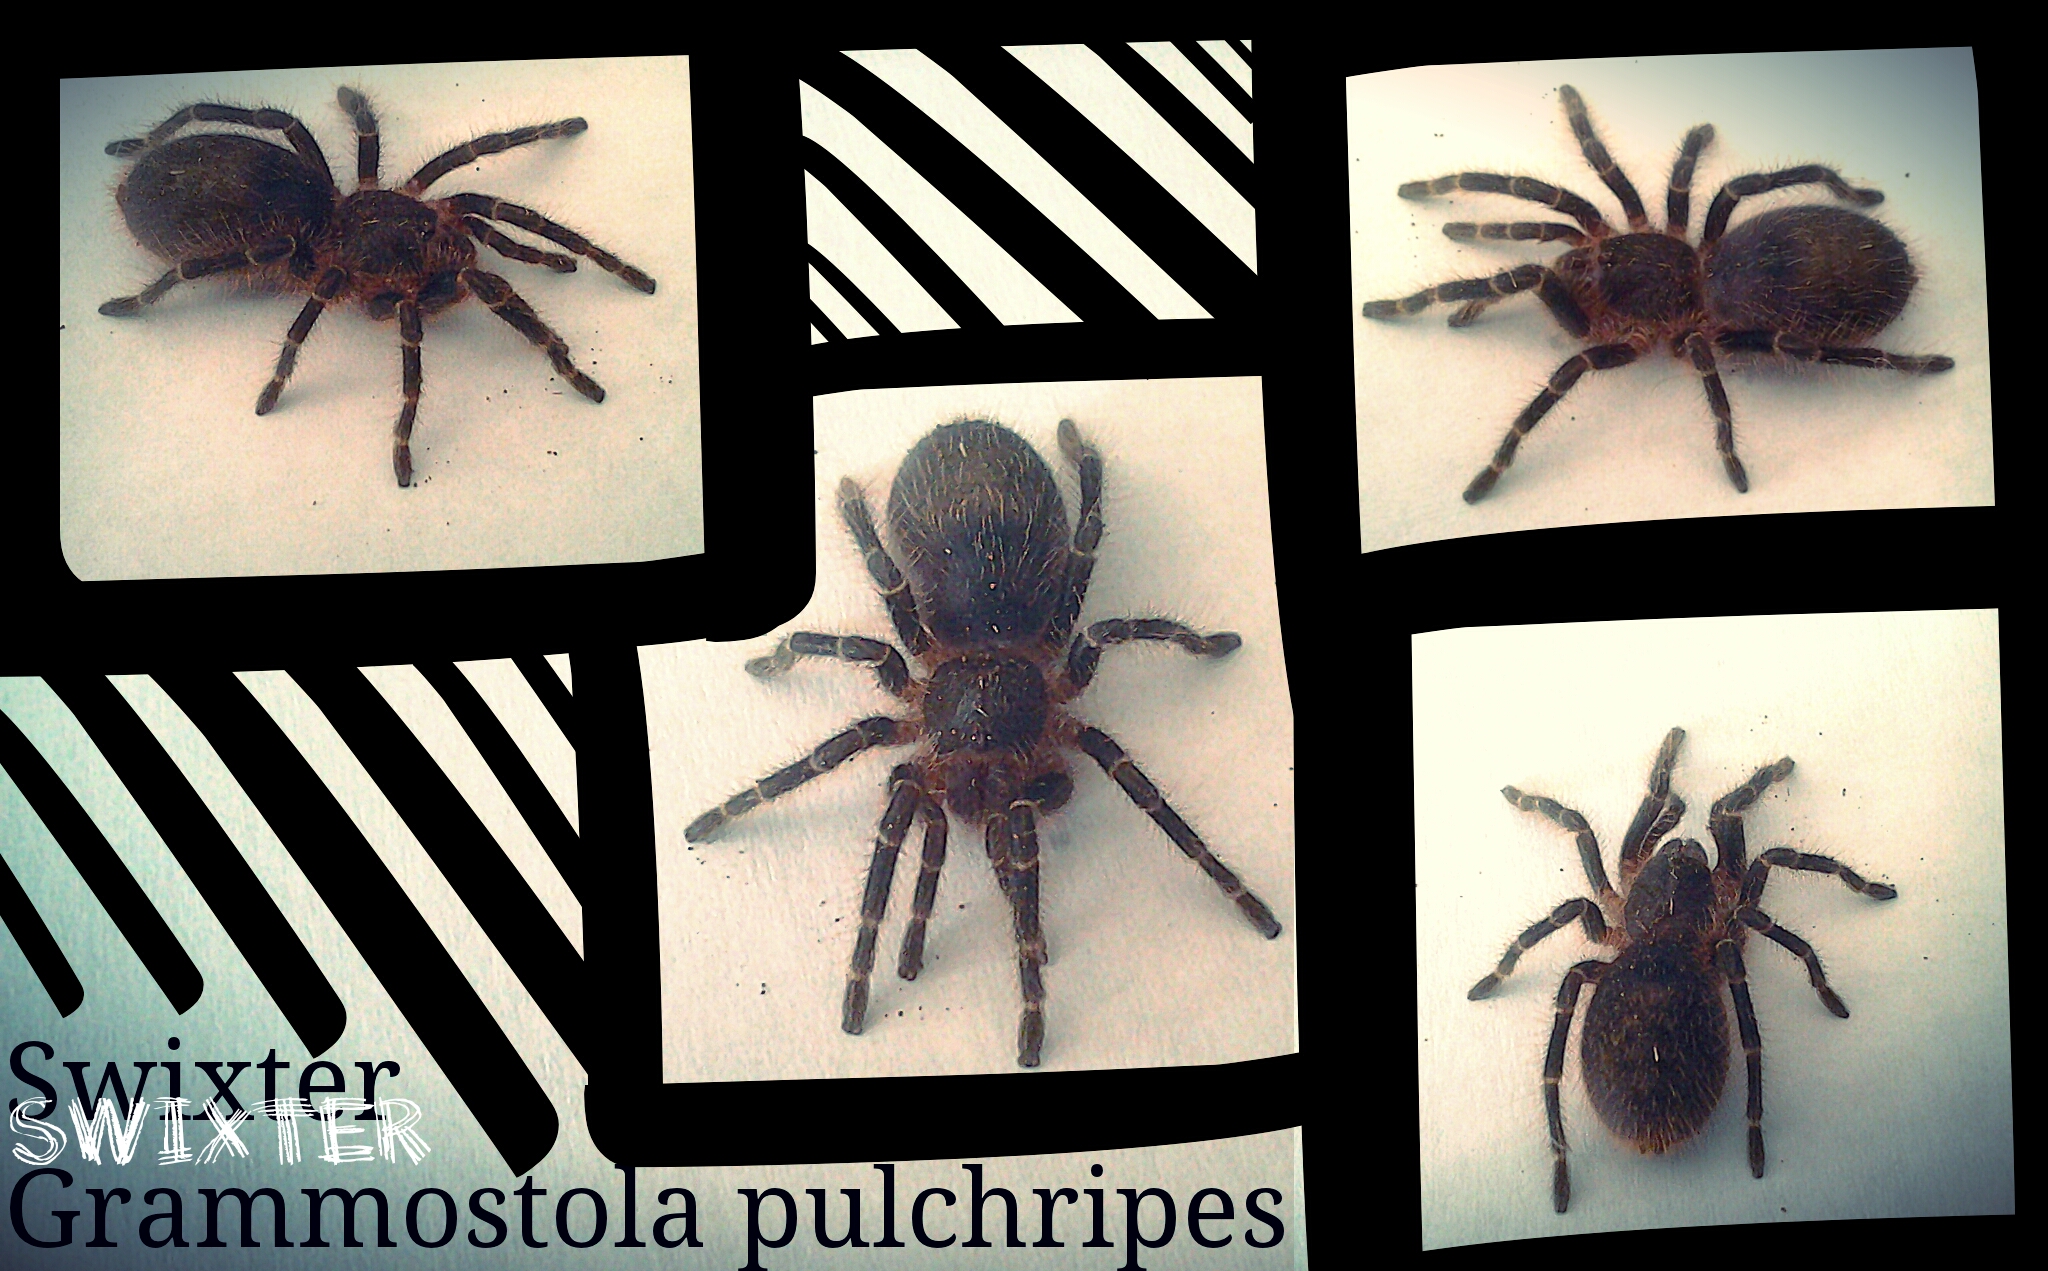 Swixter, Grammostola pulchripes spiderling